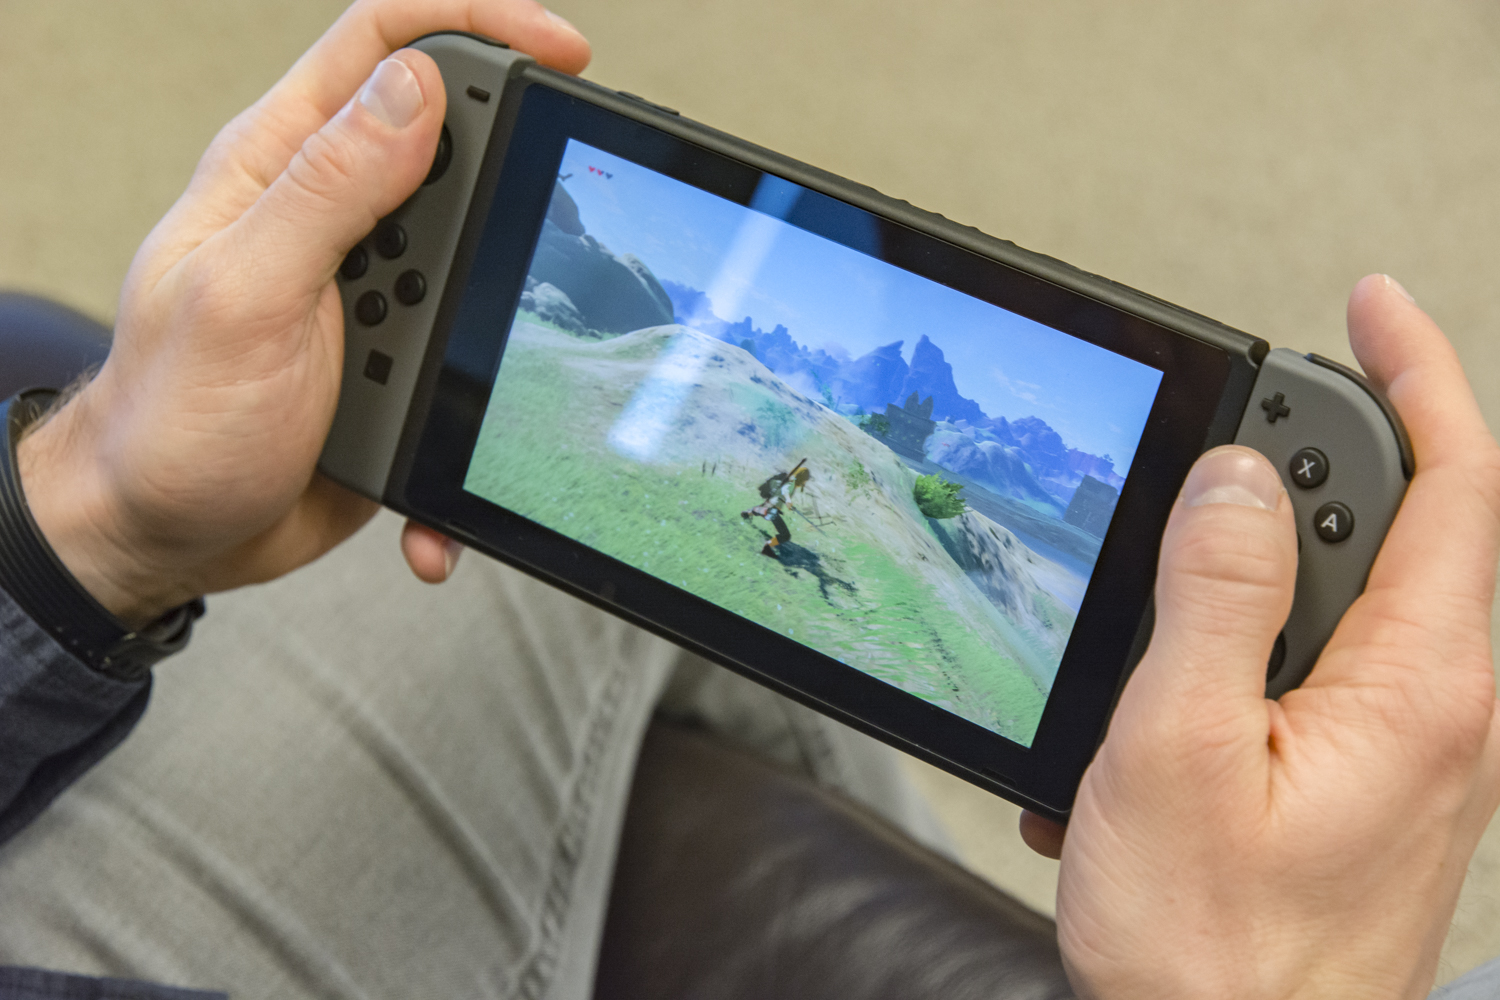 8-Bit Farm, Aplicações de download da Nintendo Switch